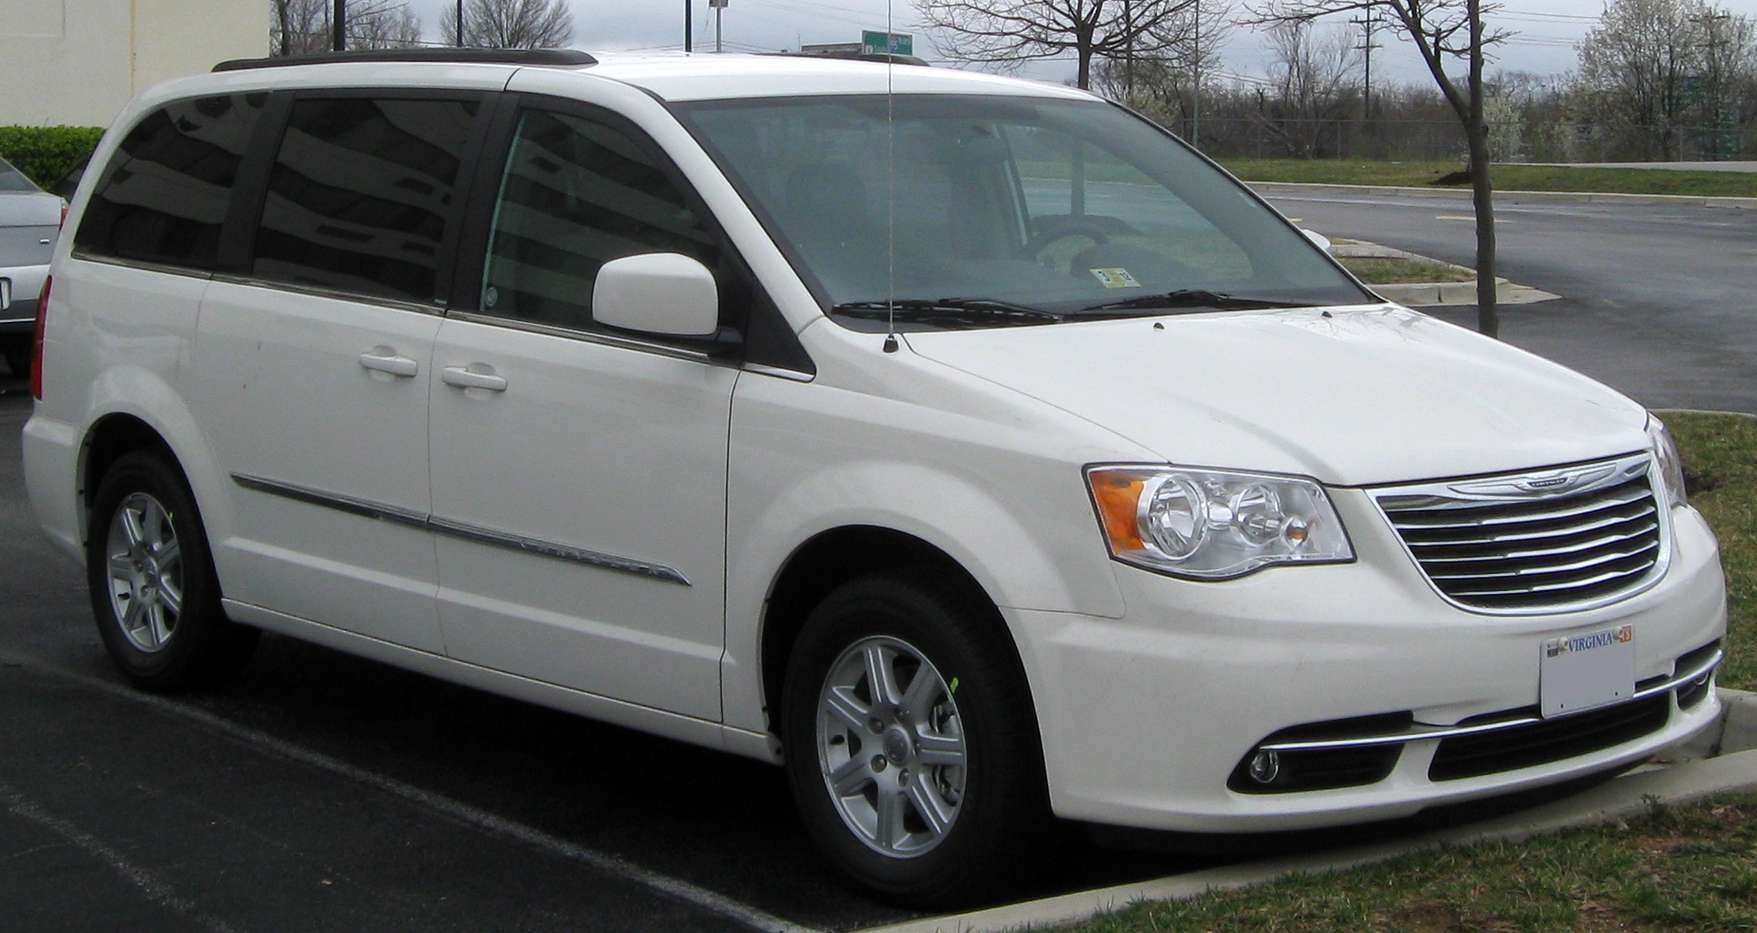 Chrysler Caravan #7168487